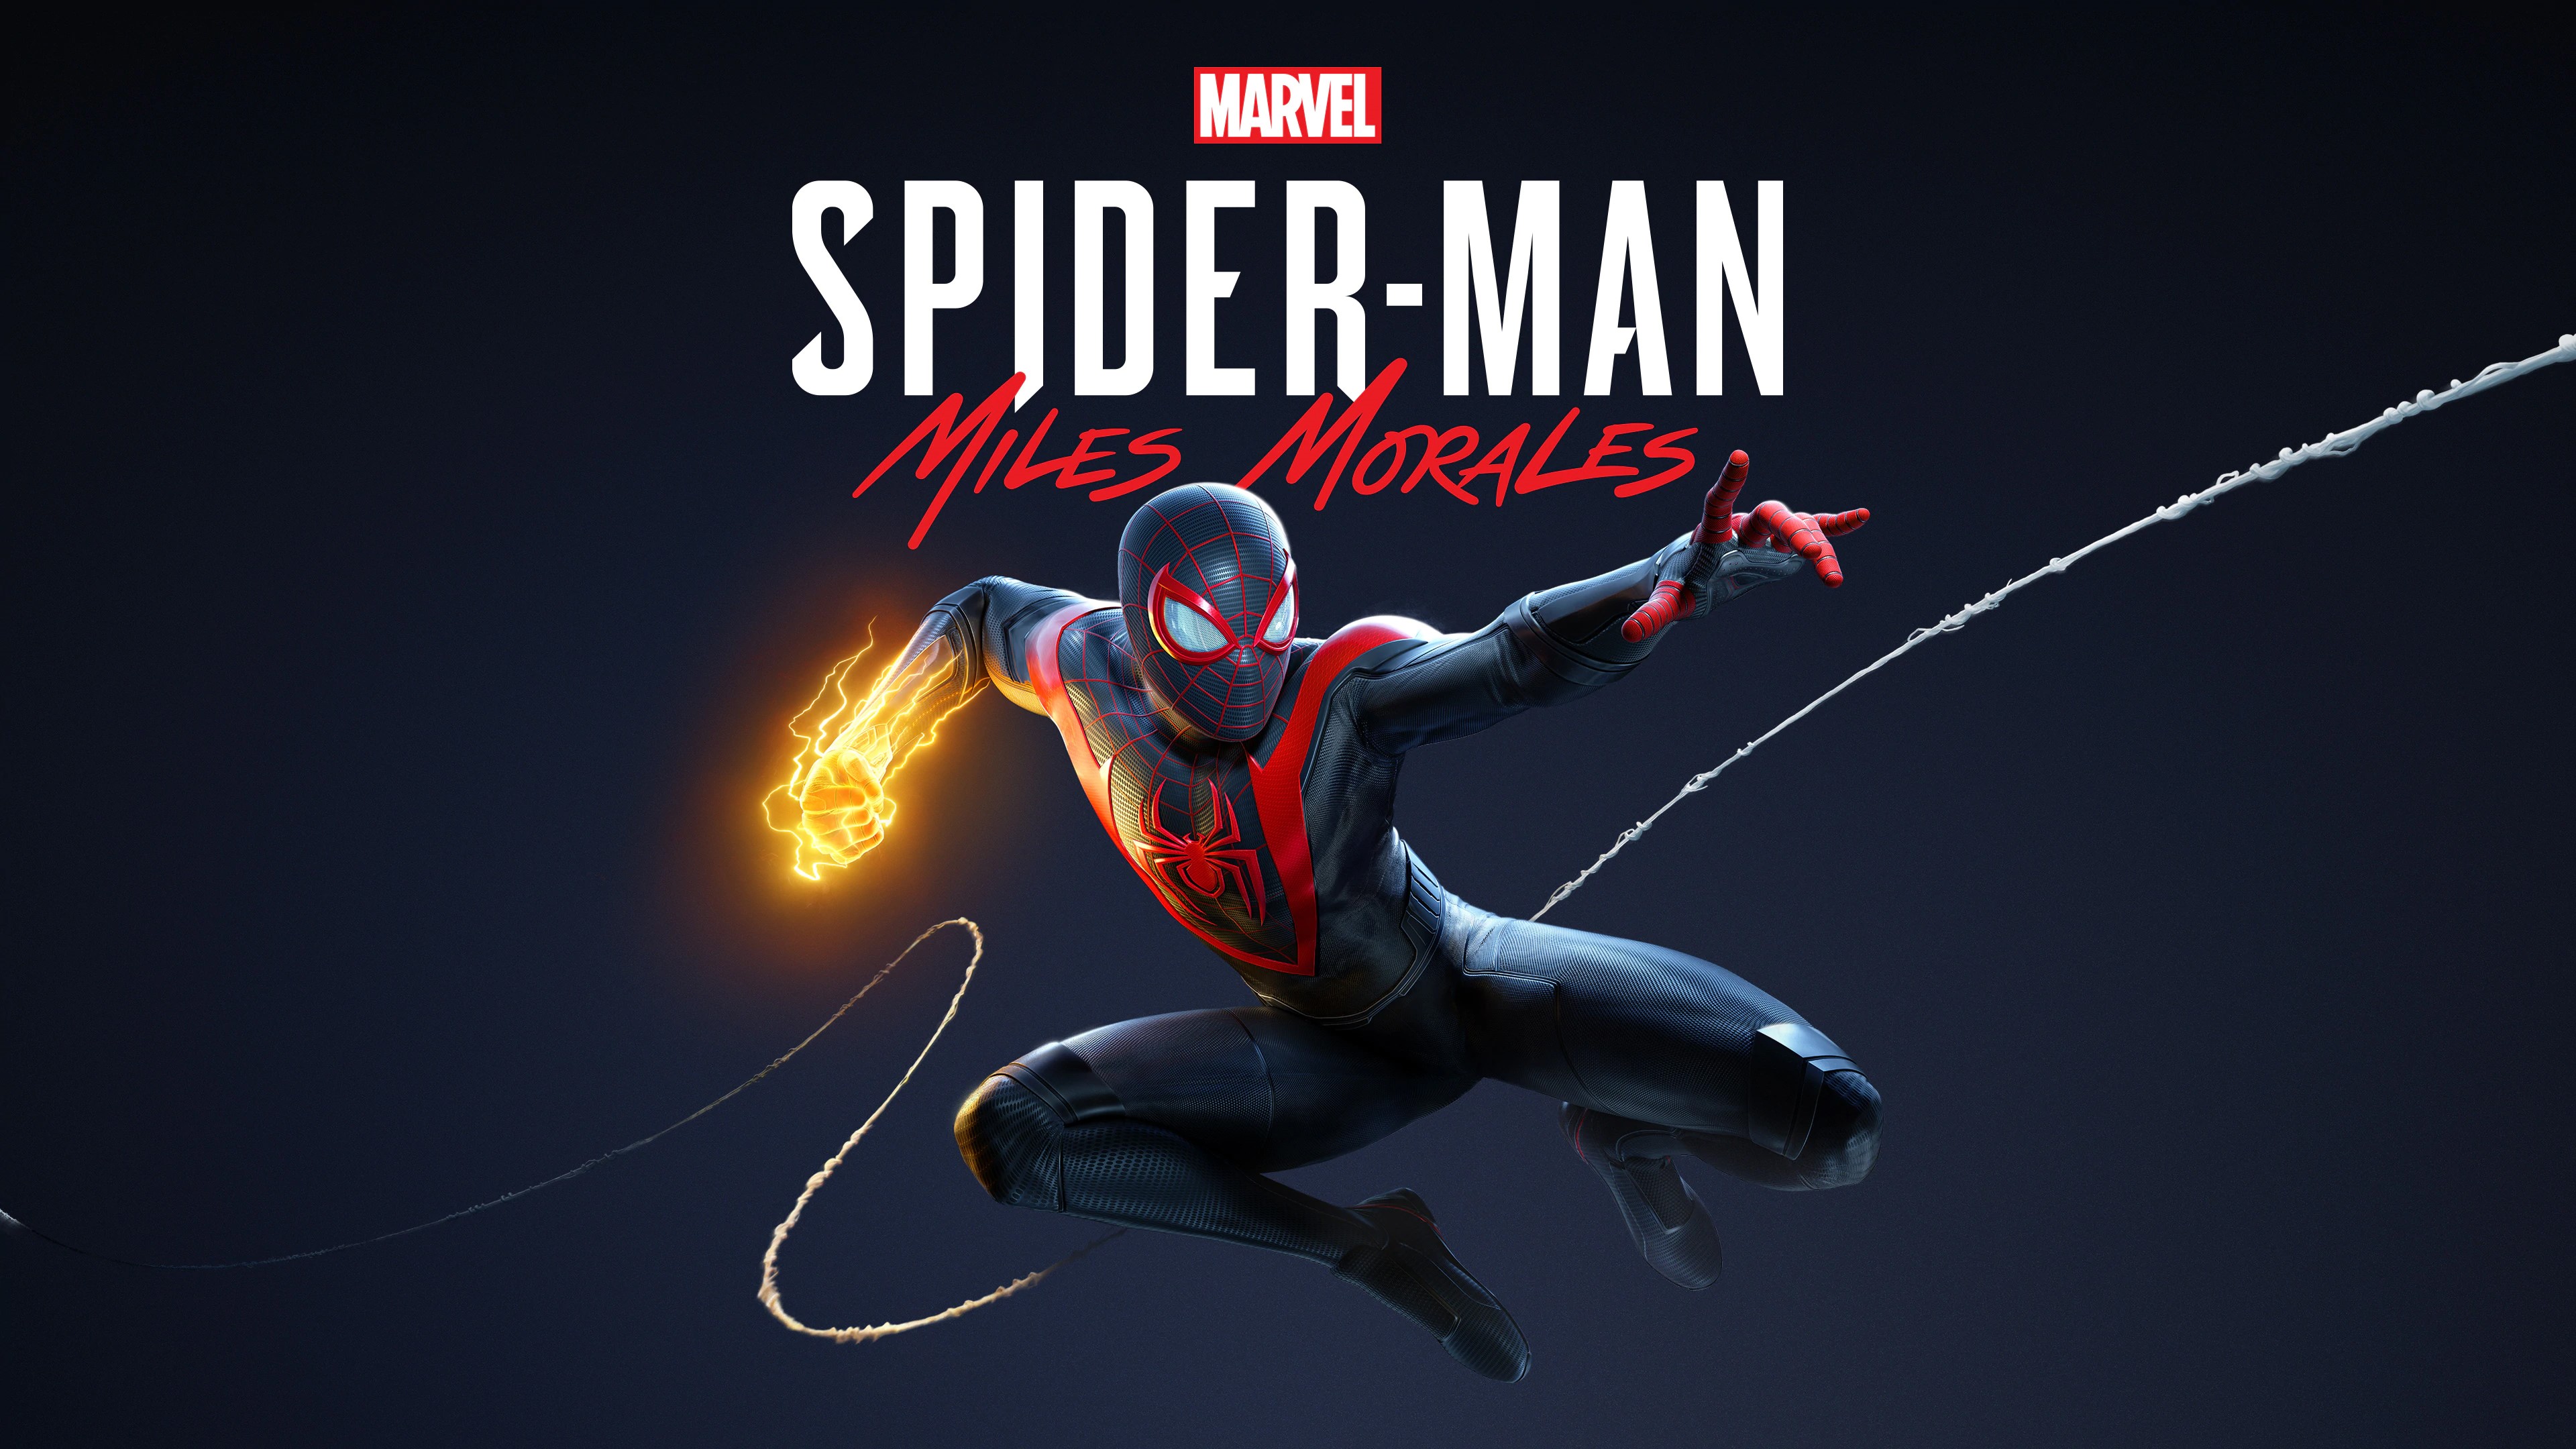 Marvel's Человек-паук /// Spider-Man: Miles Morales ( прохождение 16 )